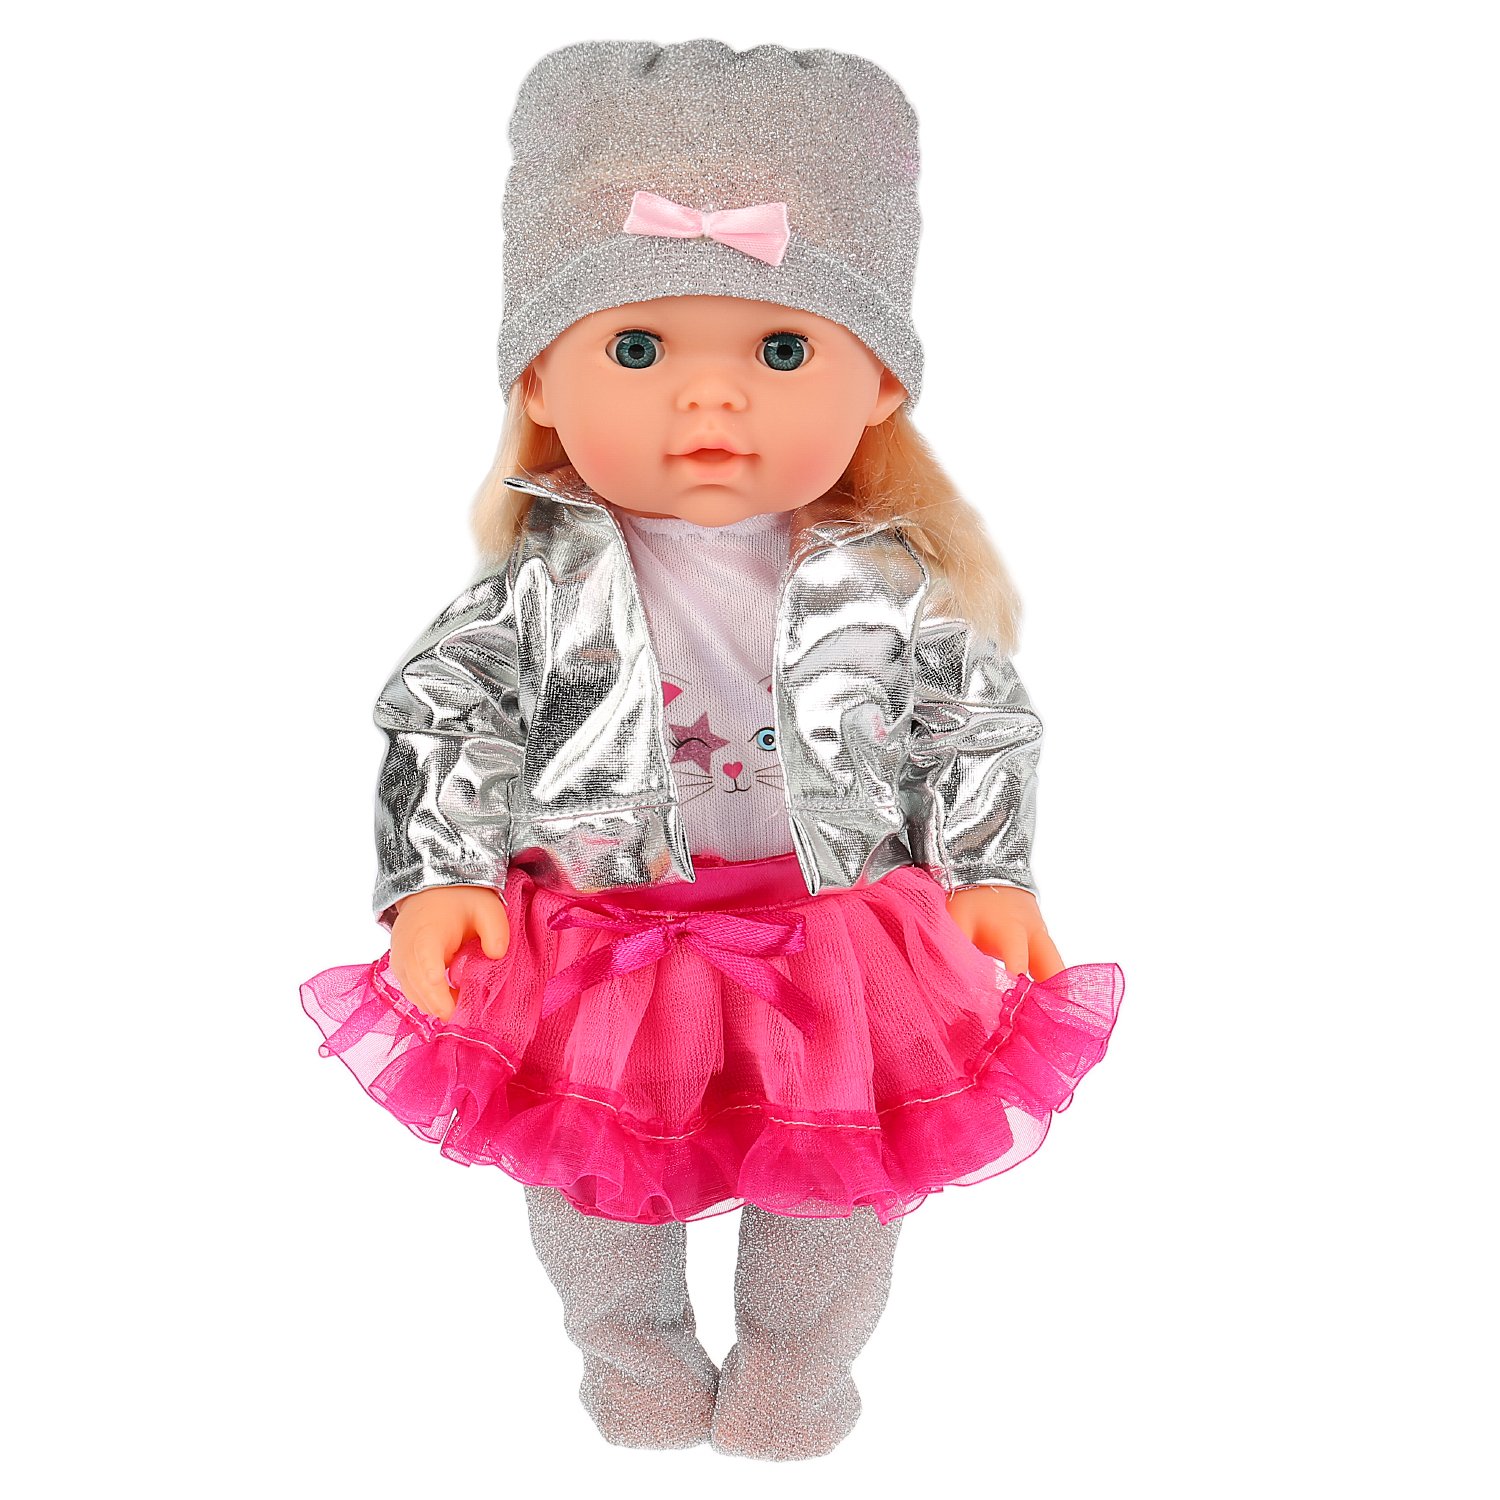 Функциональная кукла - Полина, 30 см с аксессуарами  